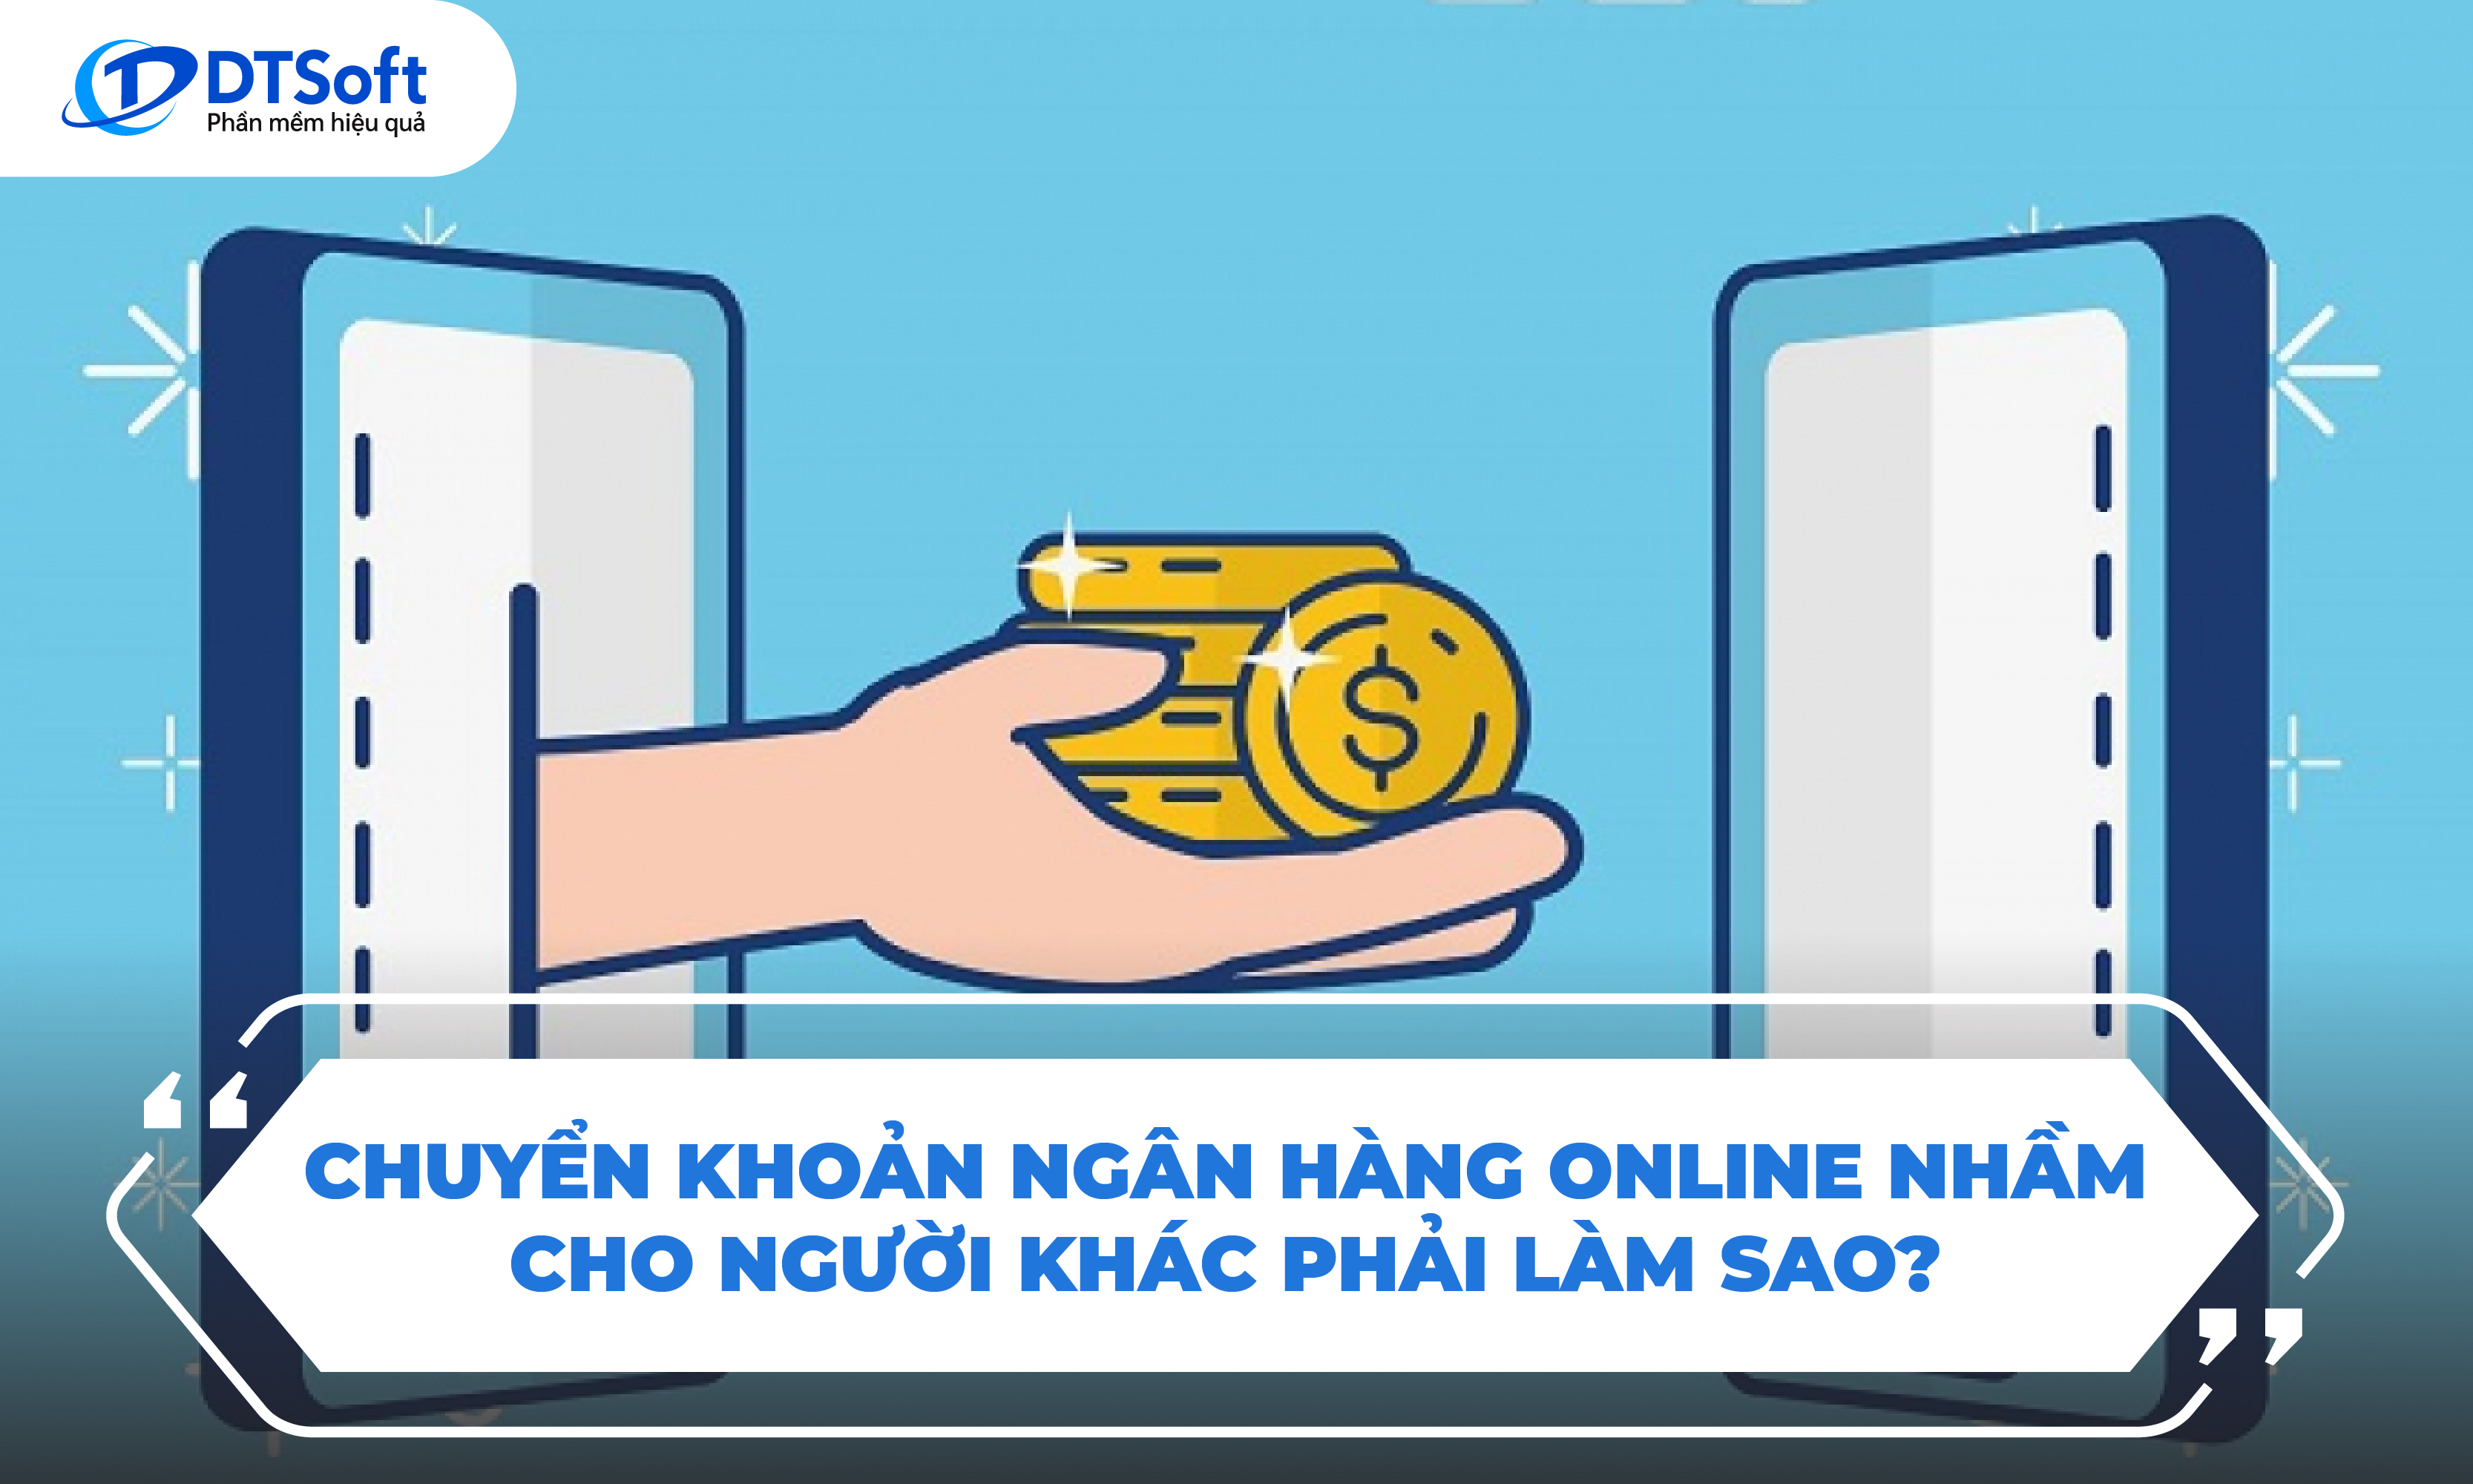 Chuyển khoản ngân hàng online nhầm cho người khác phải làm sao?